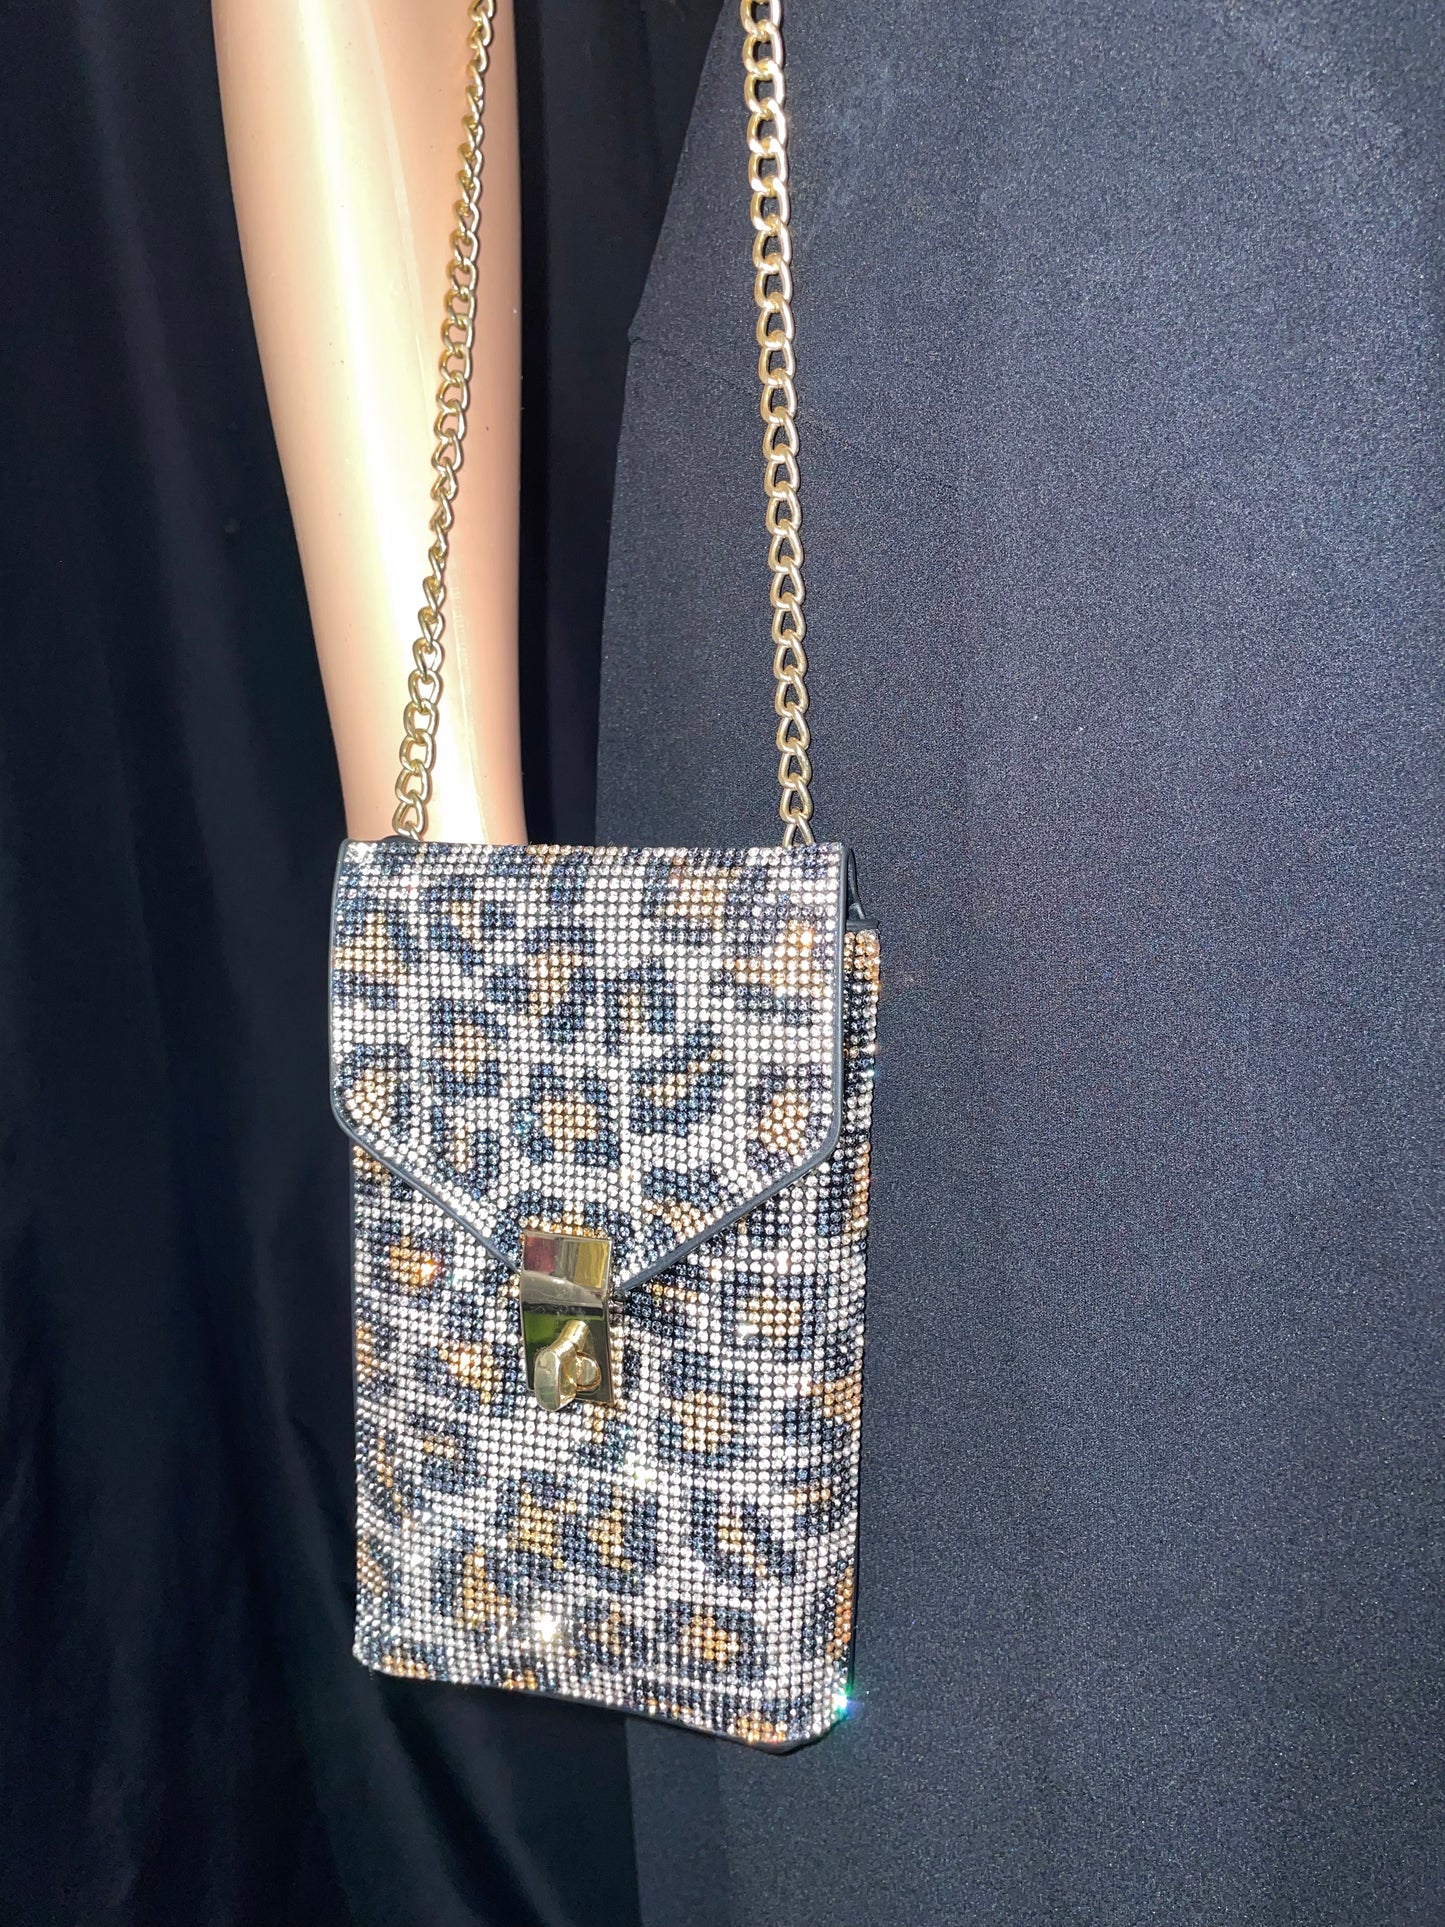 Glamour Cheetah purse